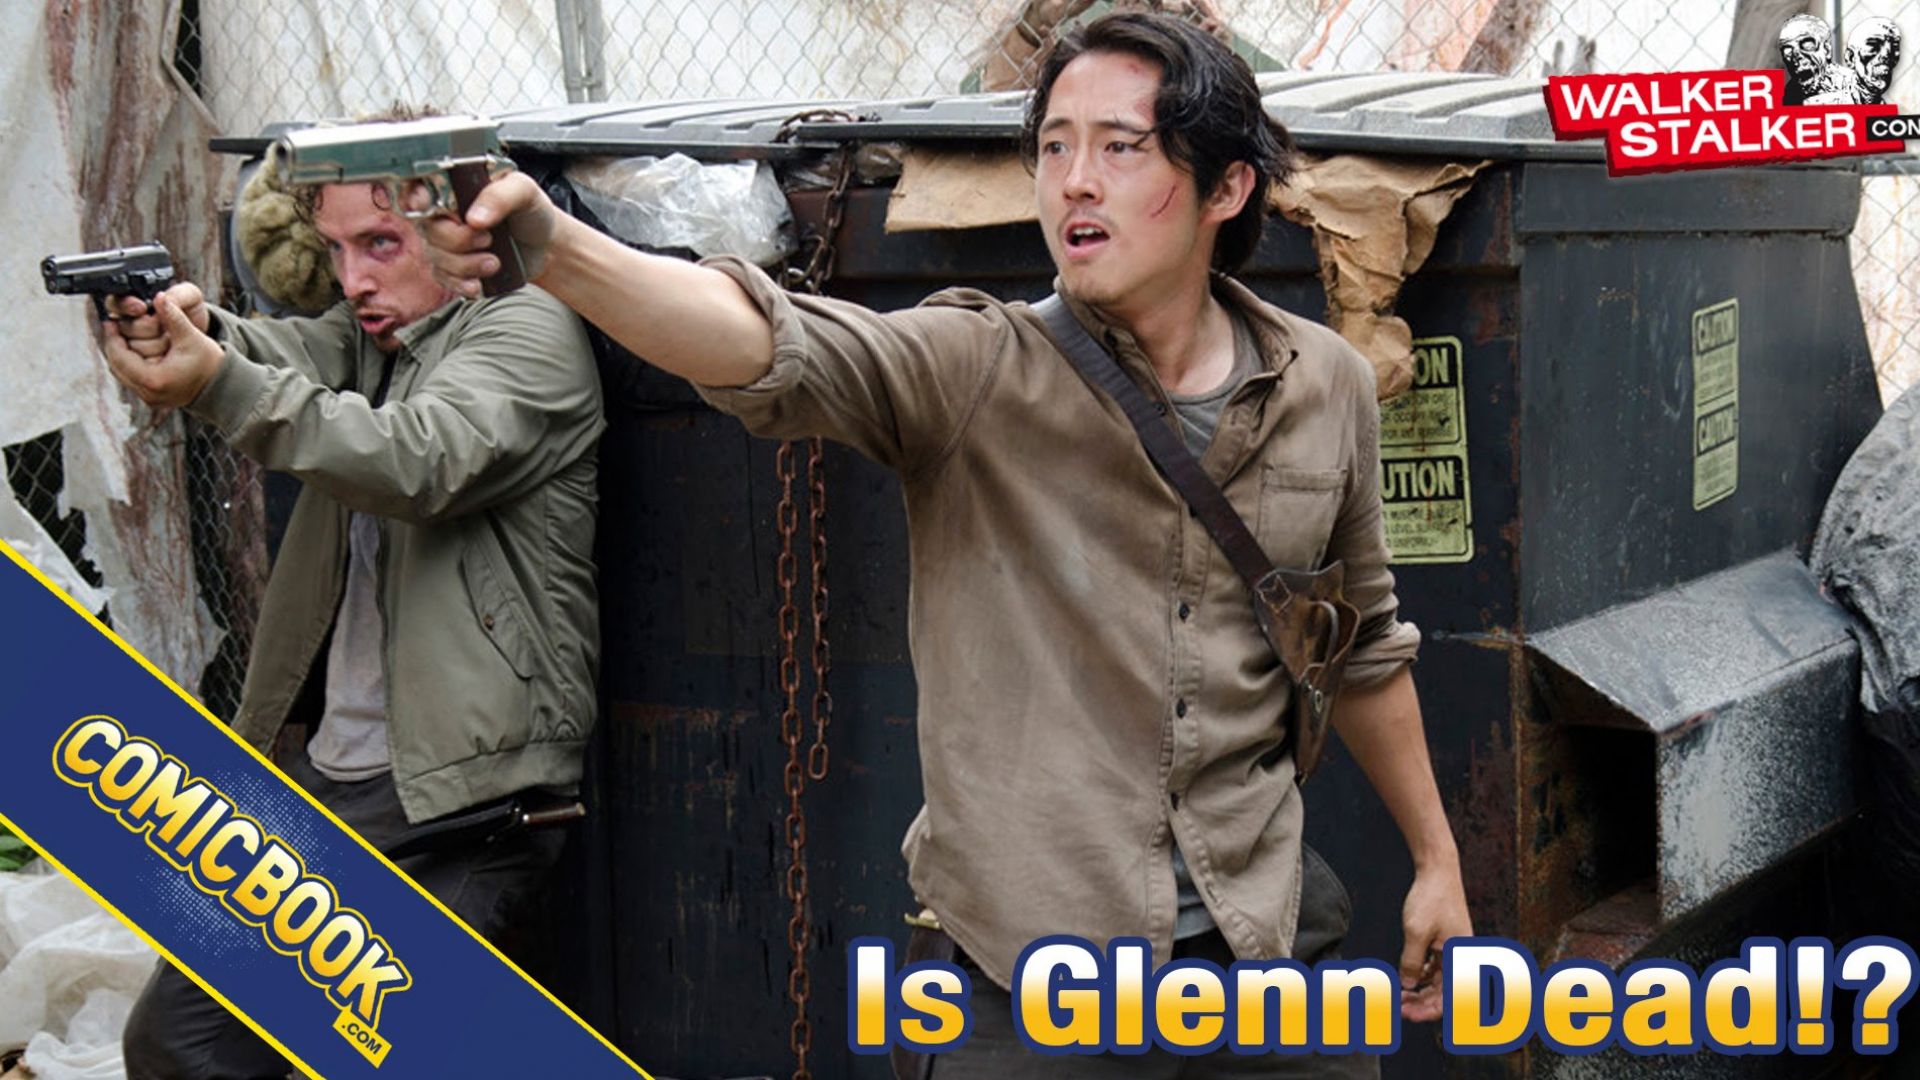 Asking Walker Stalker Con: Is Glenn Dead?!